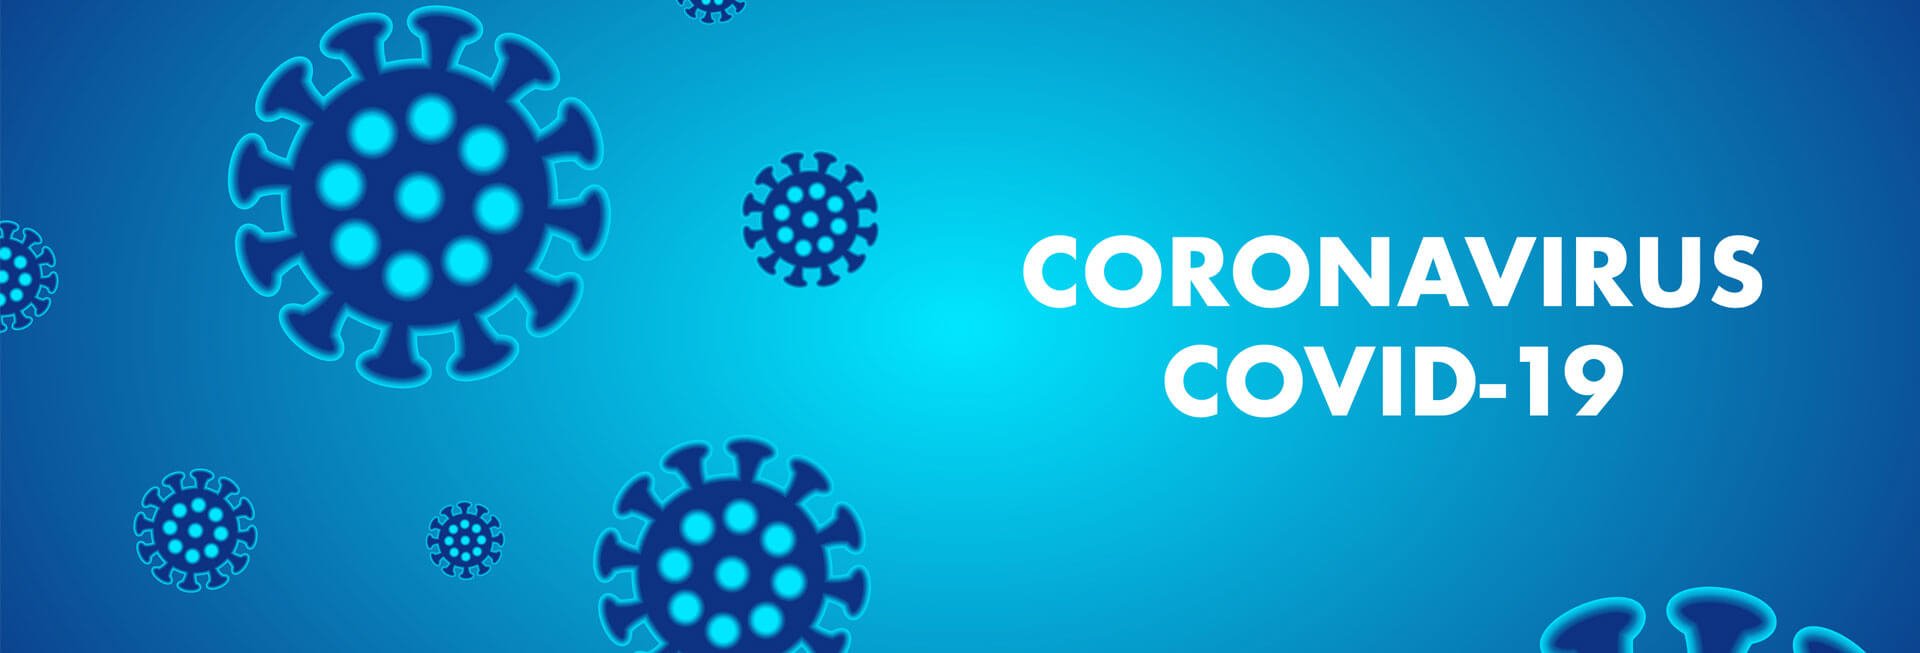 [Translate to English:] Coronavirus